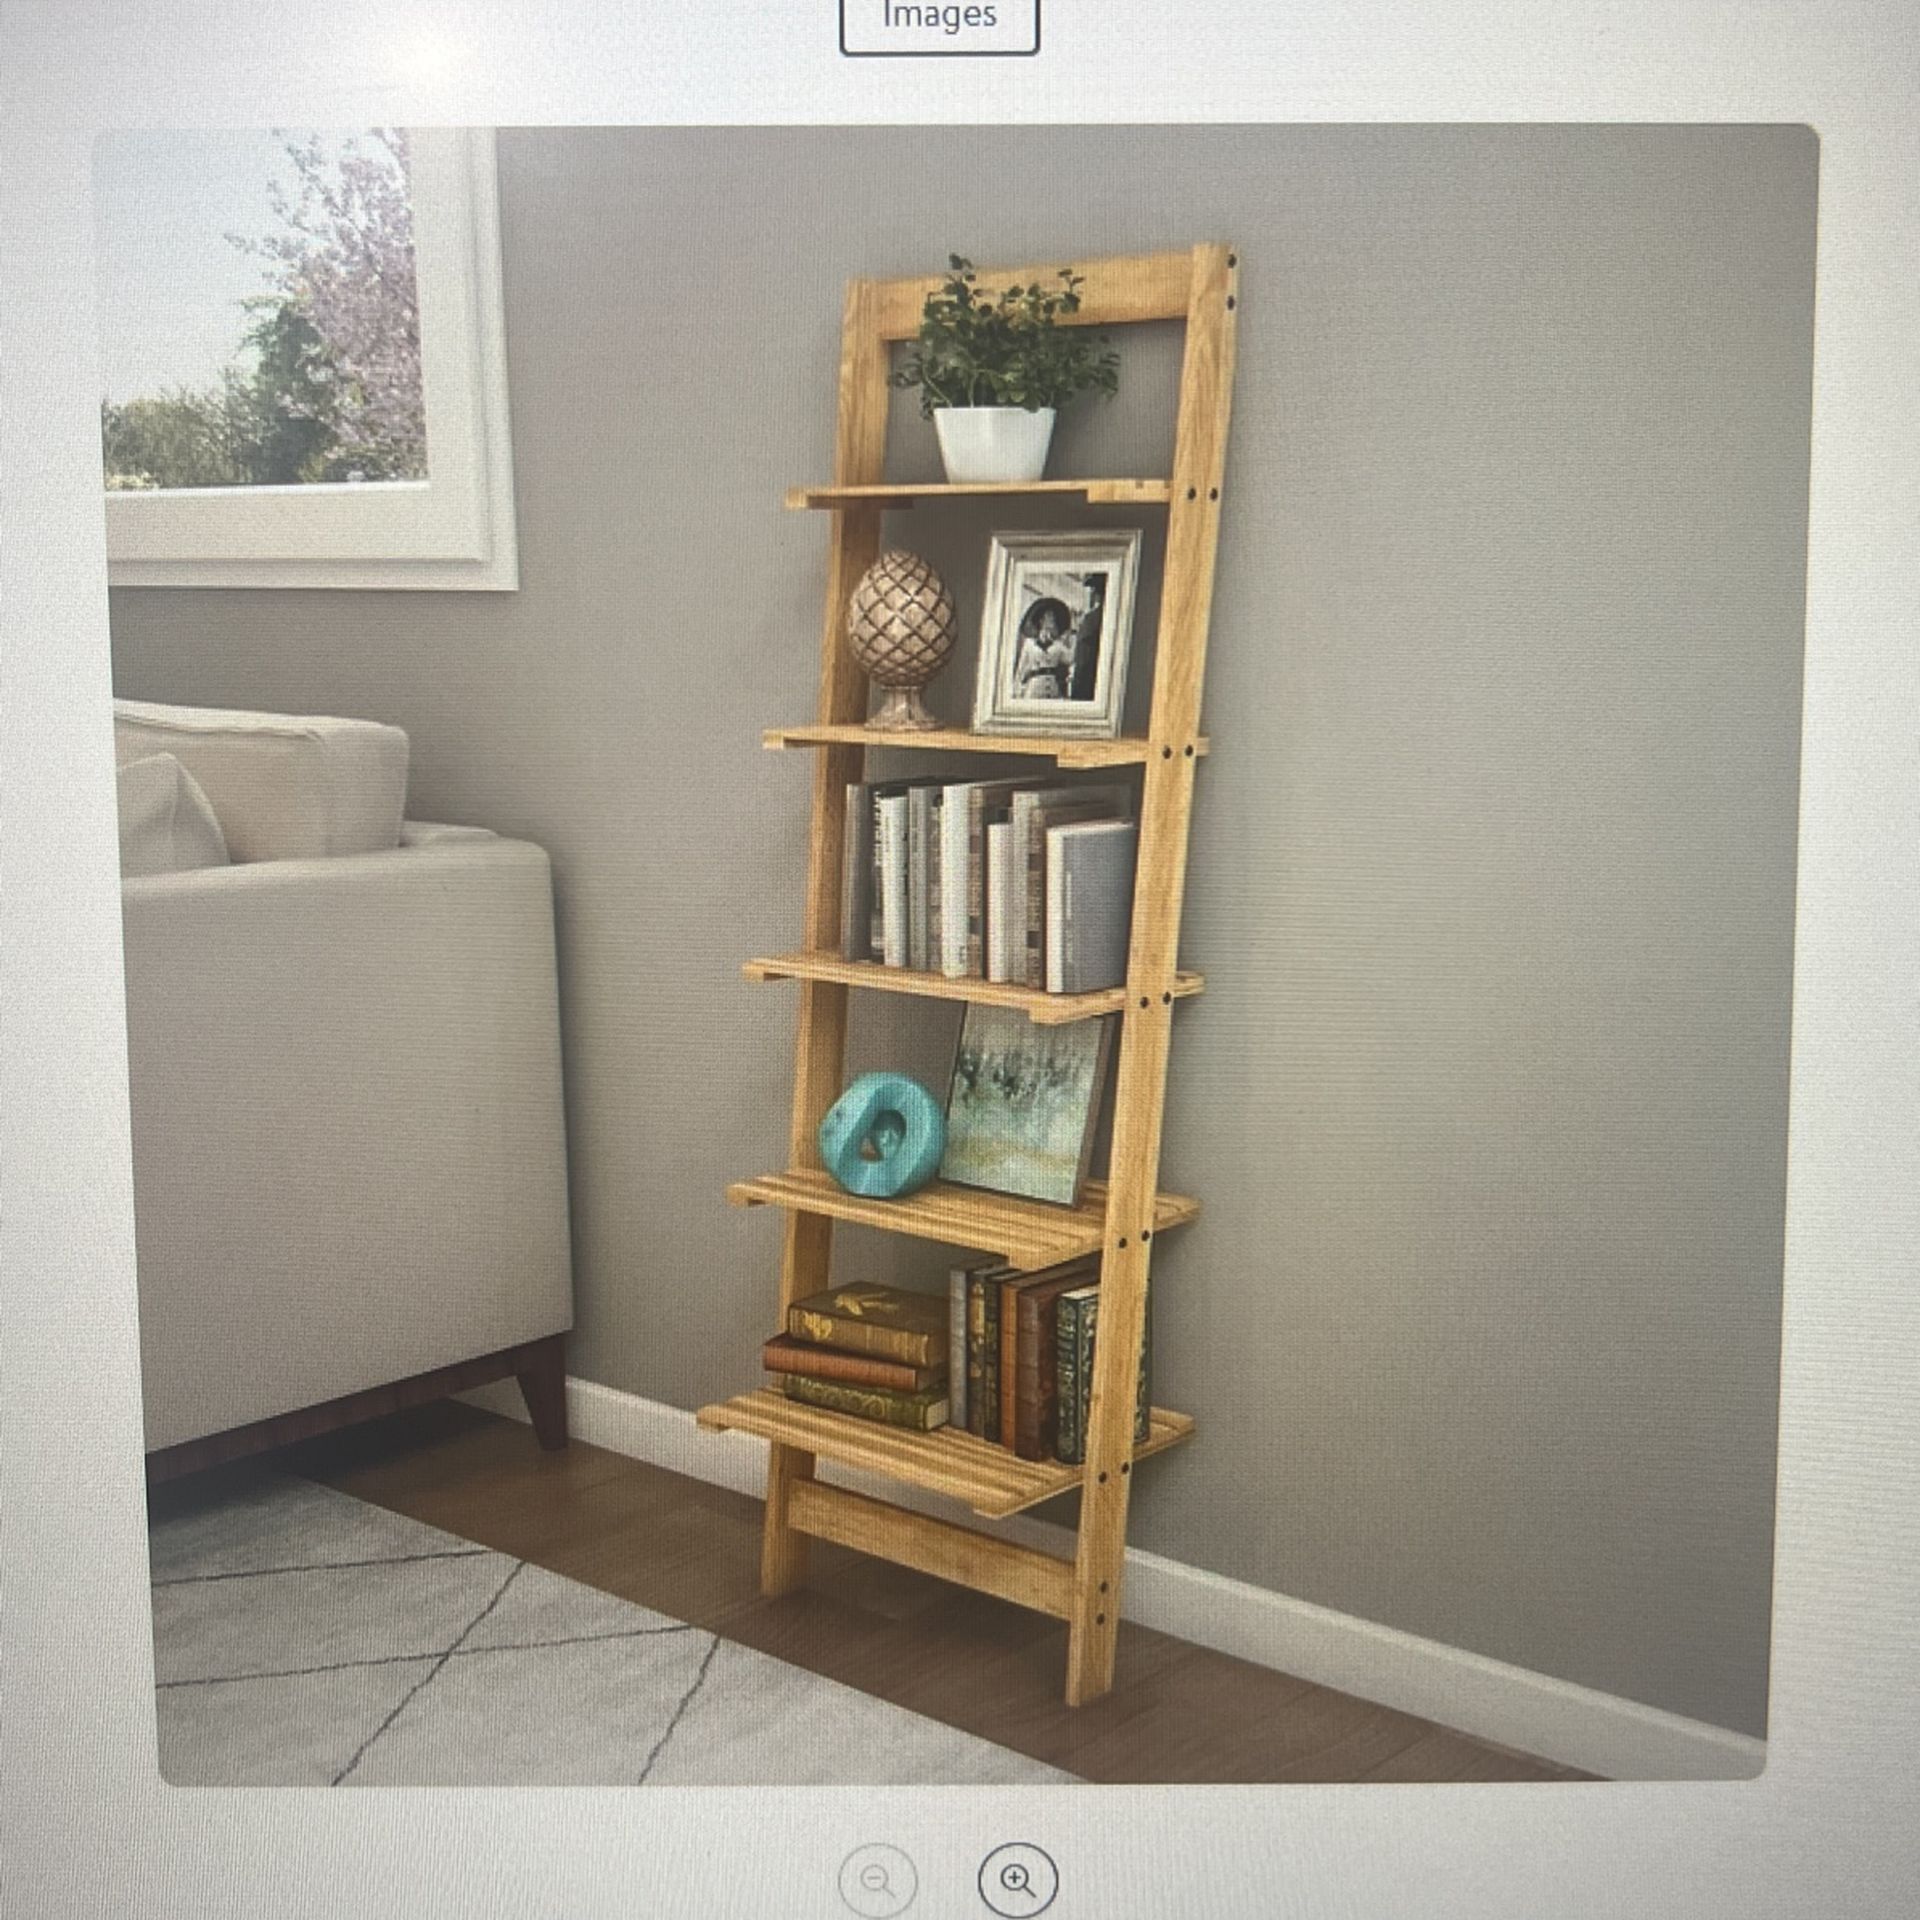 5 Tier Leaning Bookcase – Oak